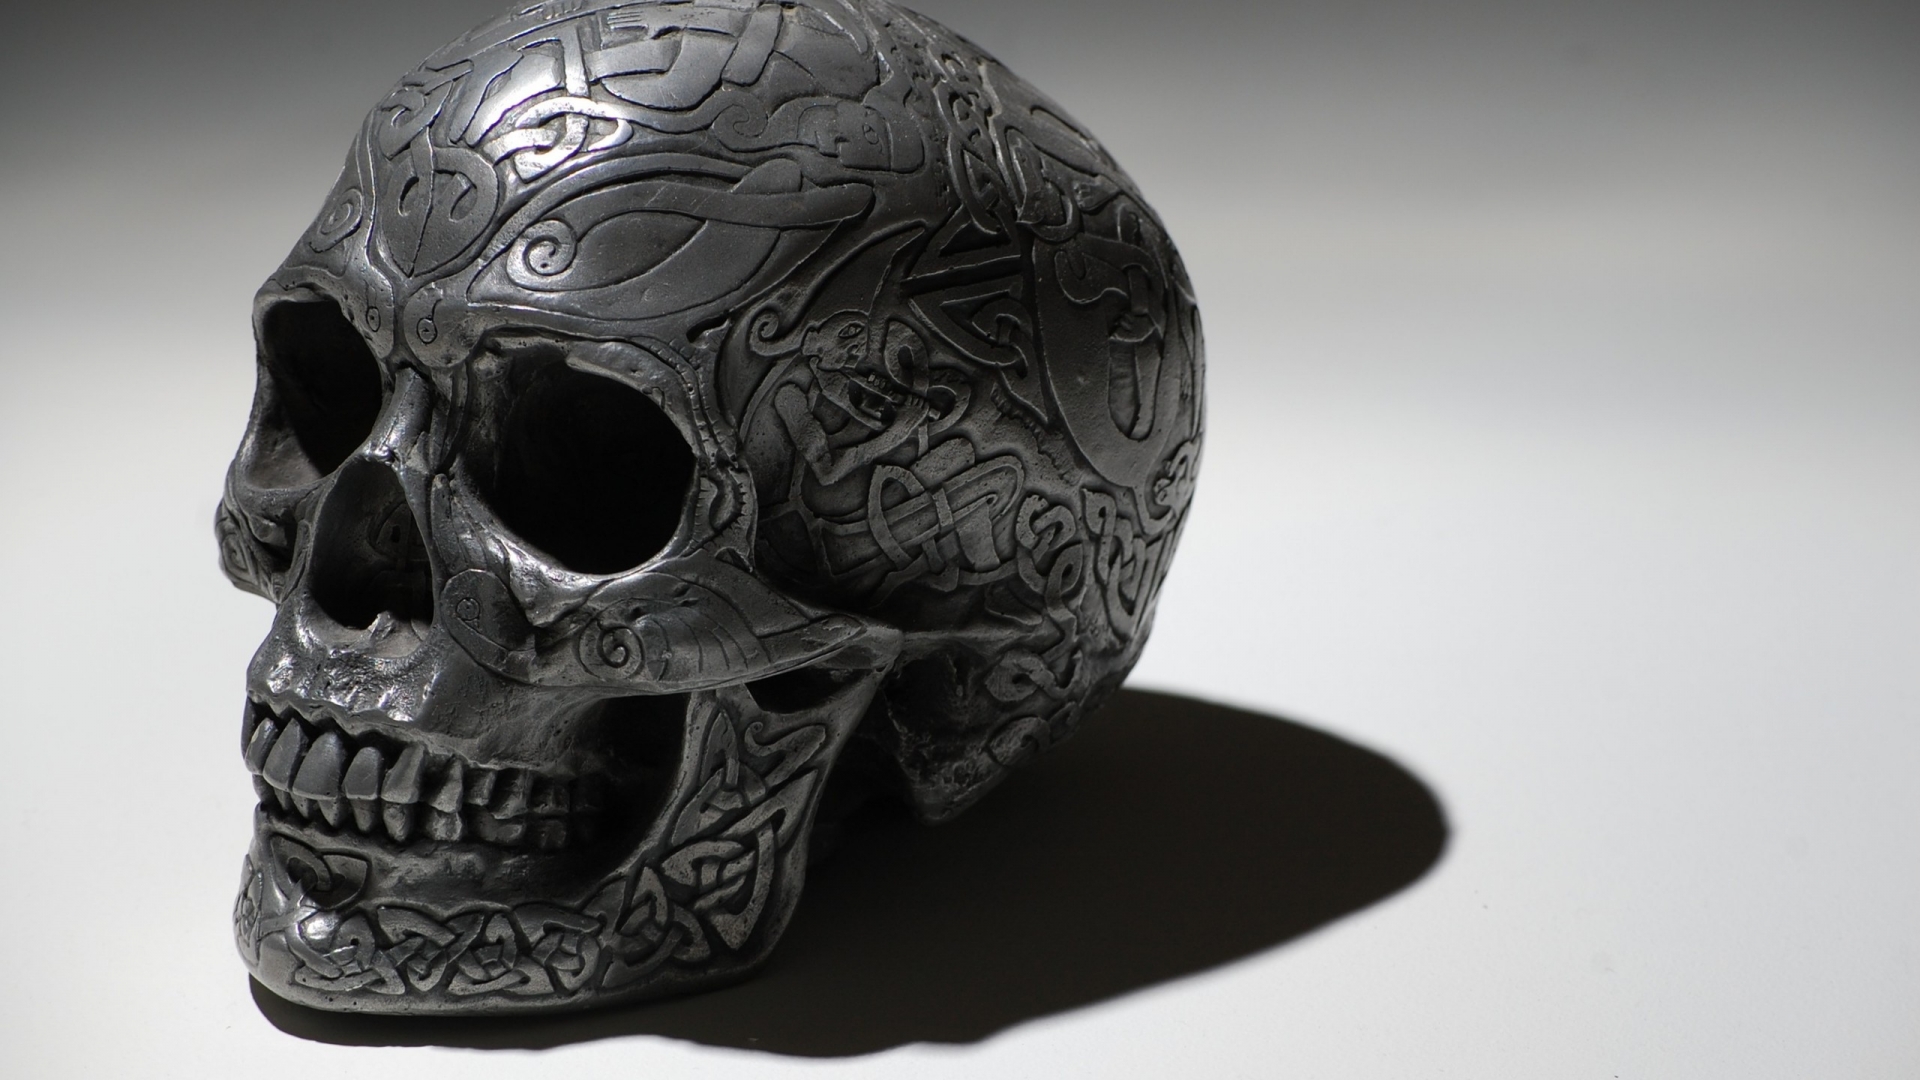 Metal Skull for 1920 x 1080 HDTV 1080p resolution